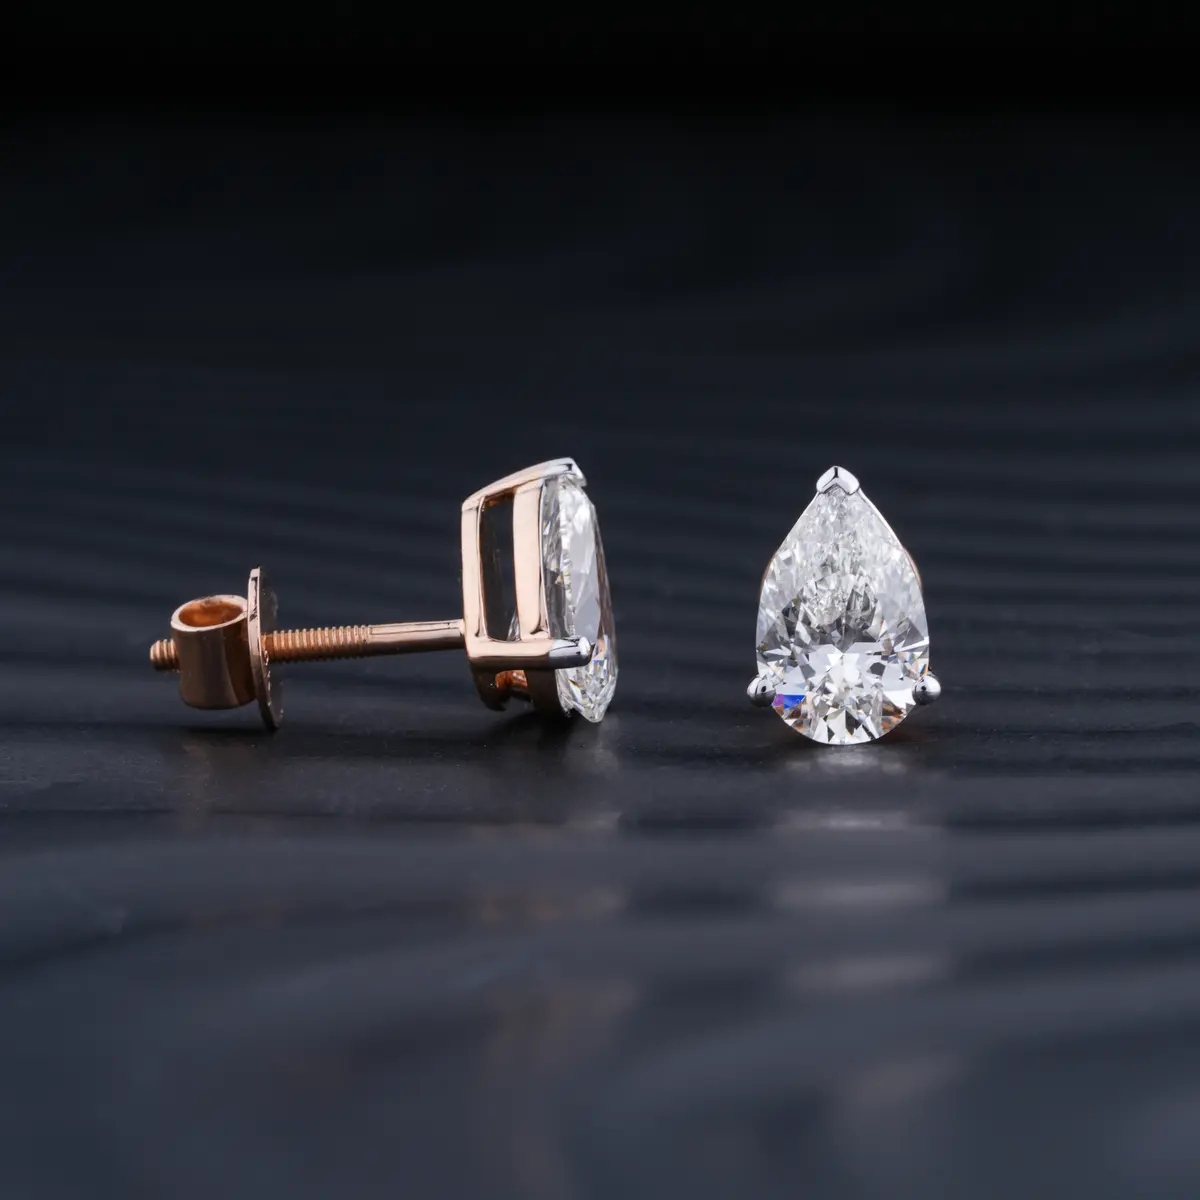 2 Carat Pear Shaped Diamond Earrings | Pear Shaped Lab Grown Diamond Stud Earrings | Pear Shaped Diamond Earrings | Earthly Jewels